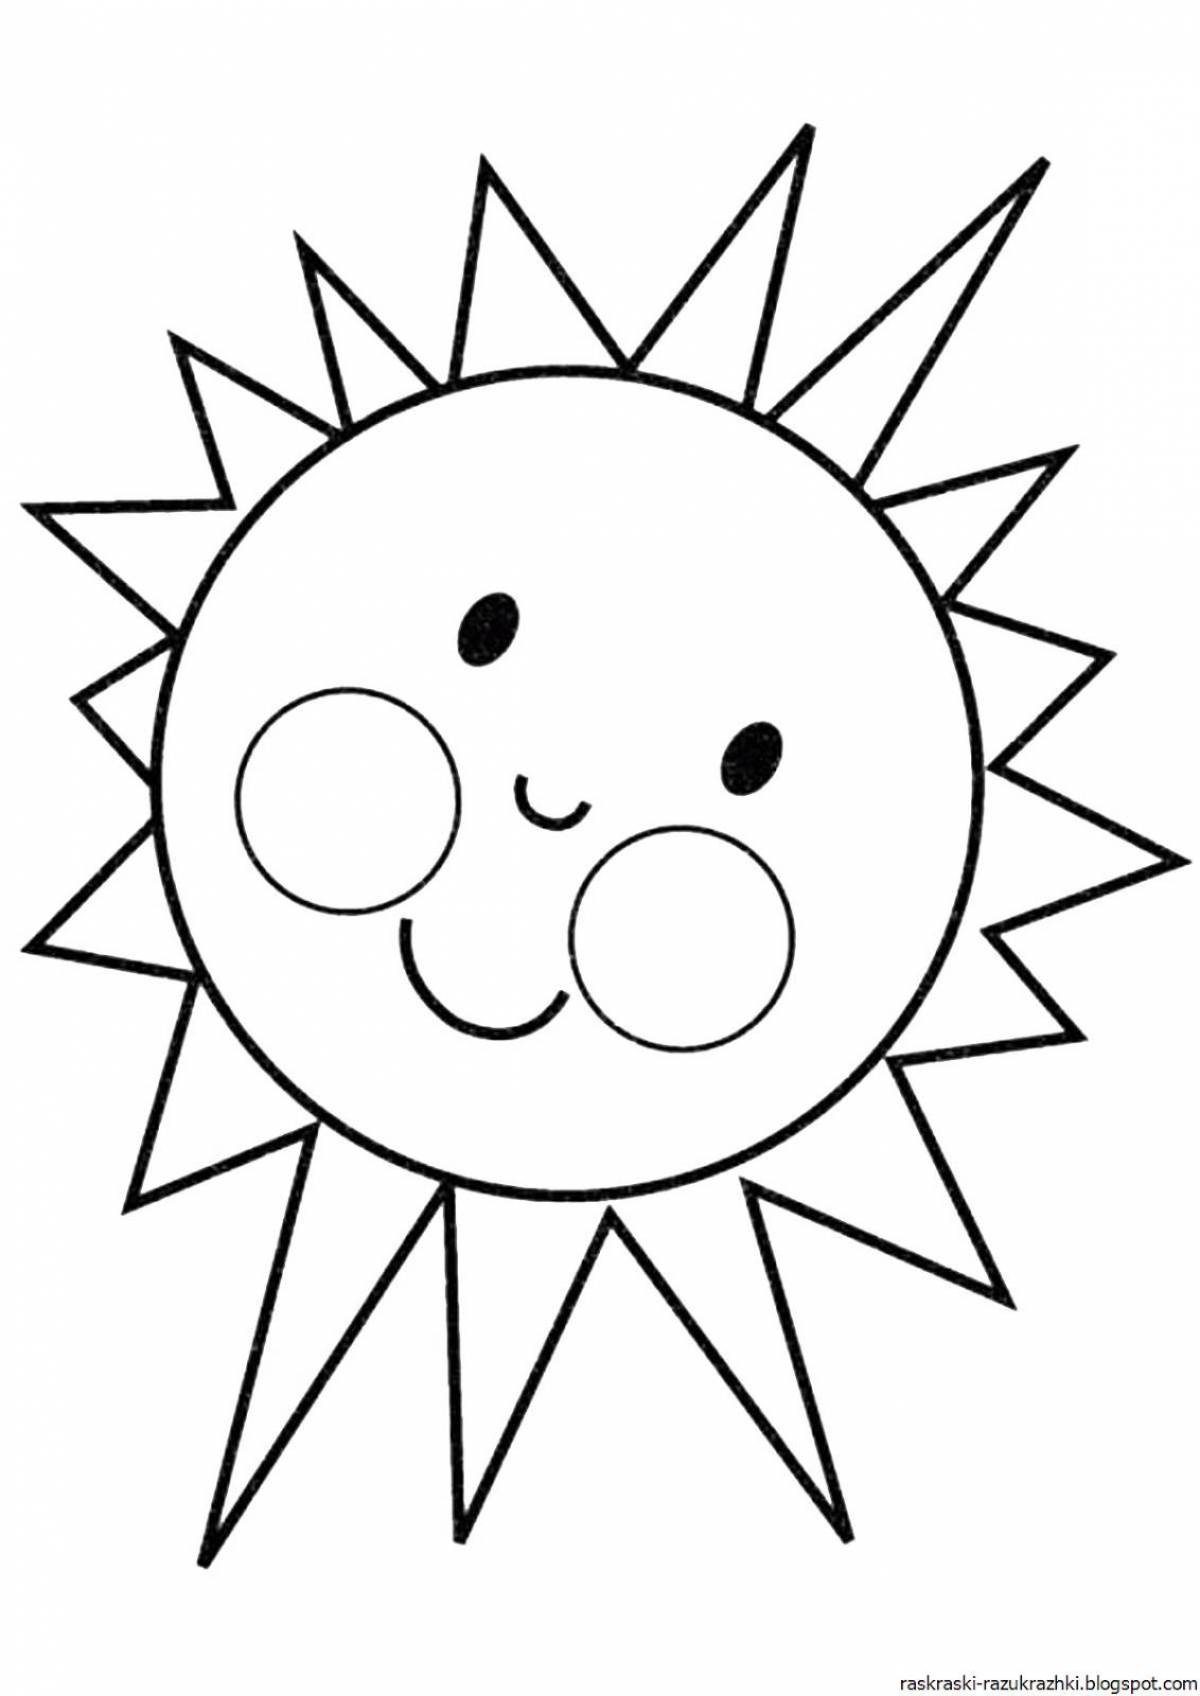 Веселая раскраска солнце для детей